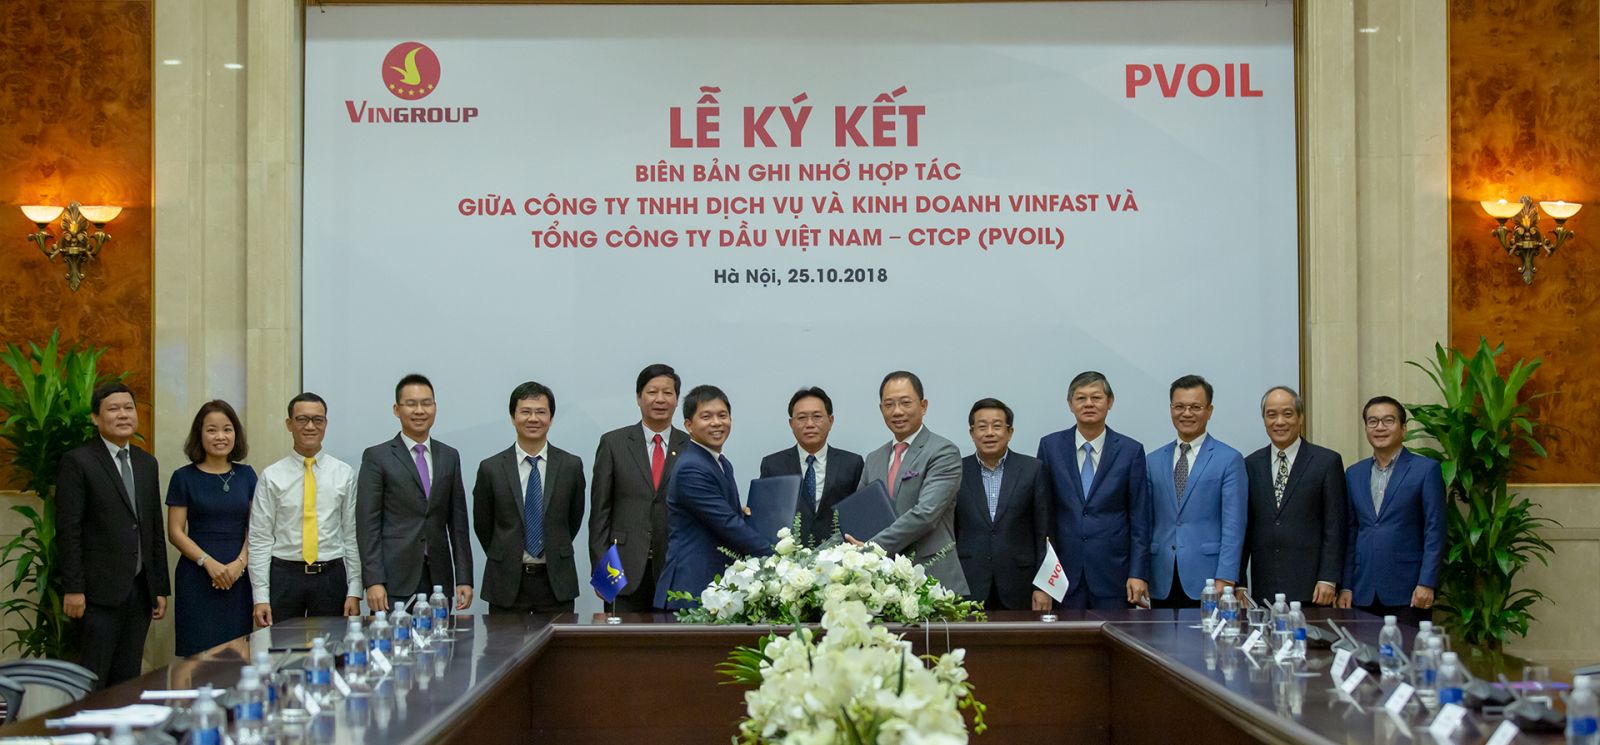  Lãnh đạo Tập đoàn Vingroup, Công ty TNHH Dịch vụ và Kinh doanh VinFast và Lãnh đạo Tổng Công ty Dầu Việt Nam (PV Oil) tham gia Lễ ký kết hợp tác được tổ chức tại Hà Nội sáng 25/10/2018.